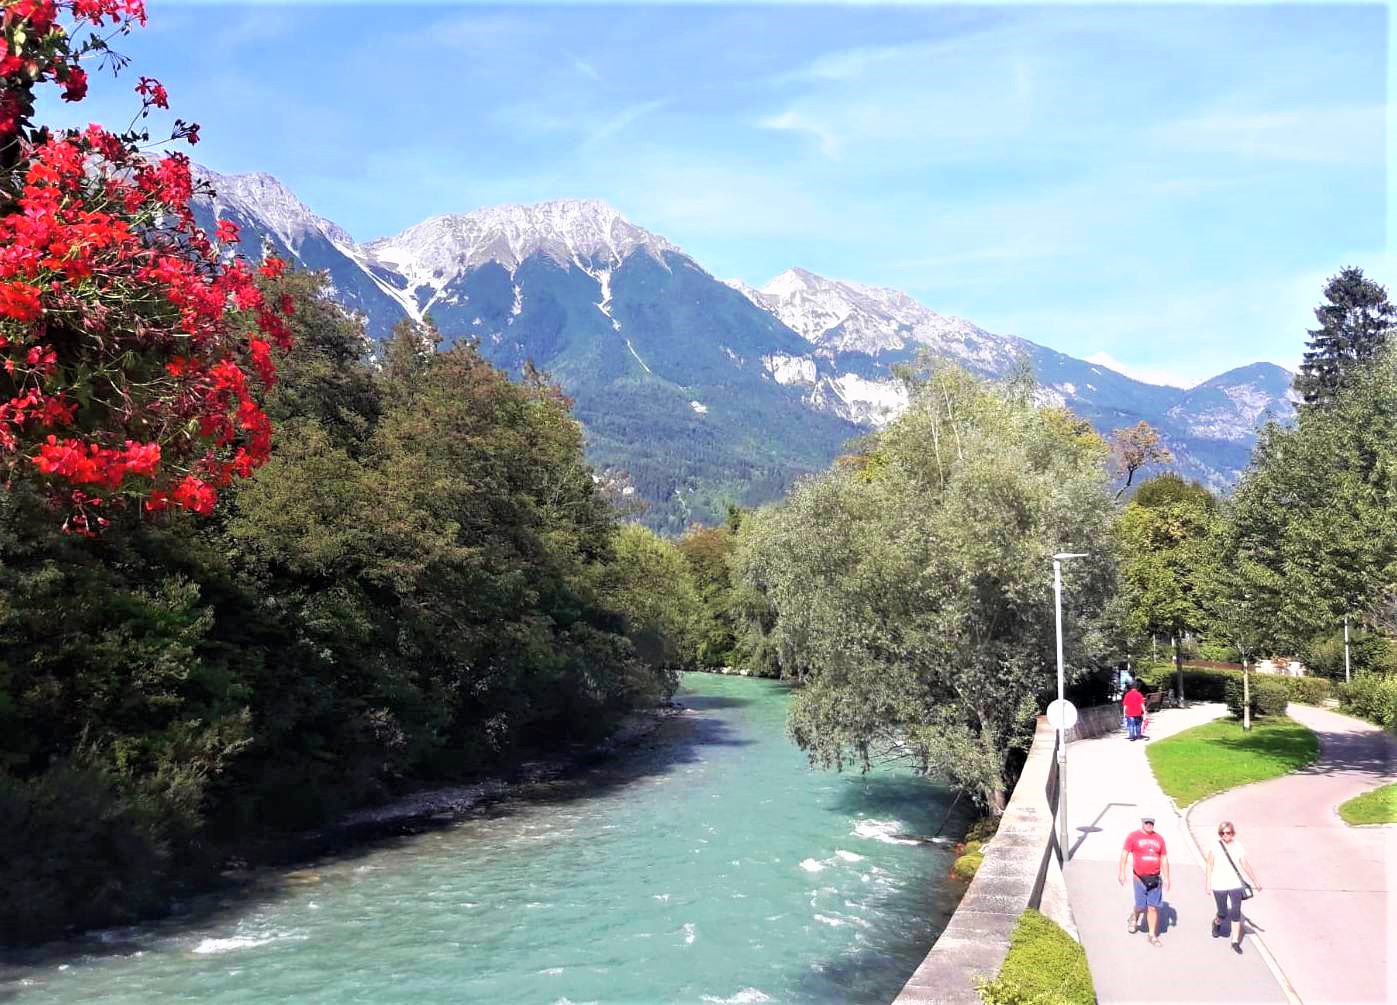  Der über 500 Kilometer lange mächtige Alpenfluss Inn prägt auch die Stadtlandschaft von Innsbruck.